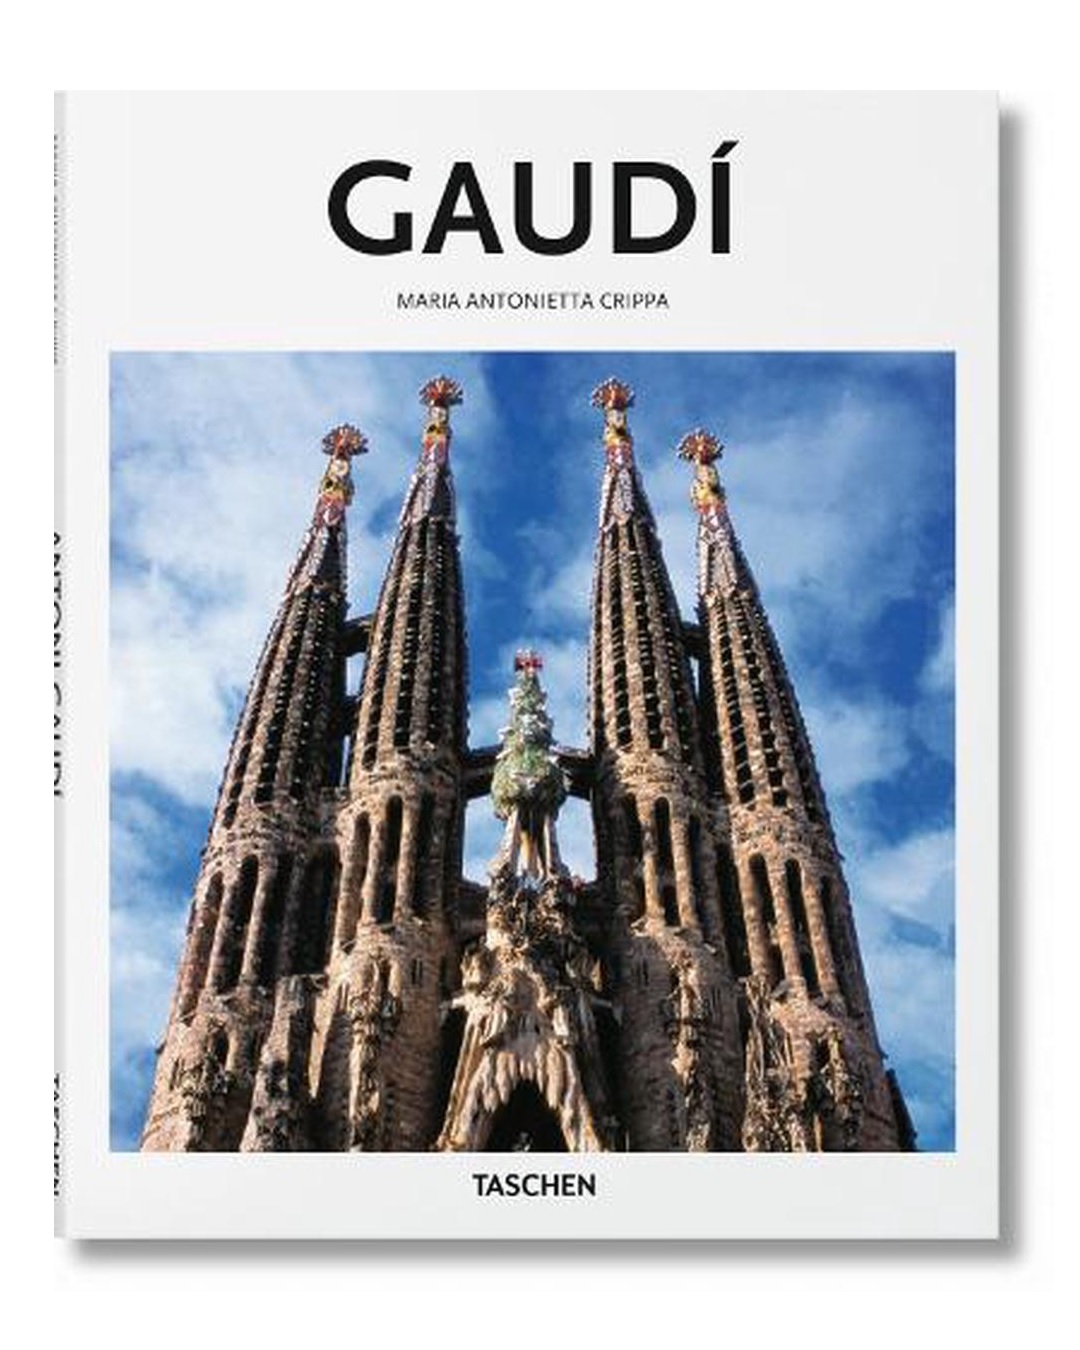 Gaudi book